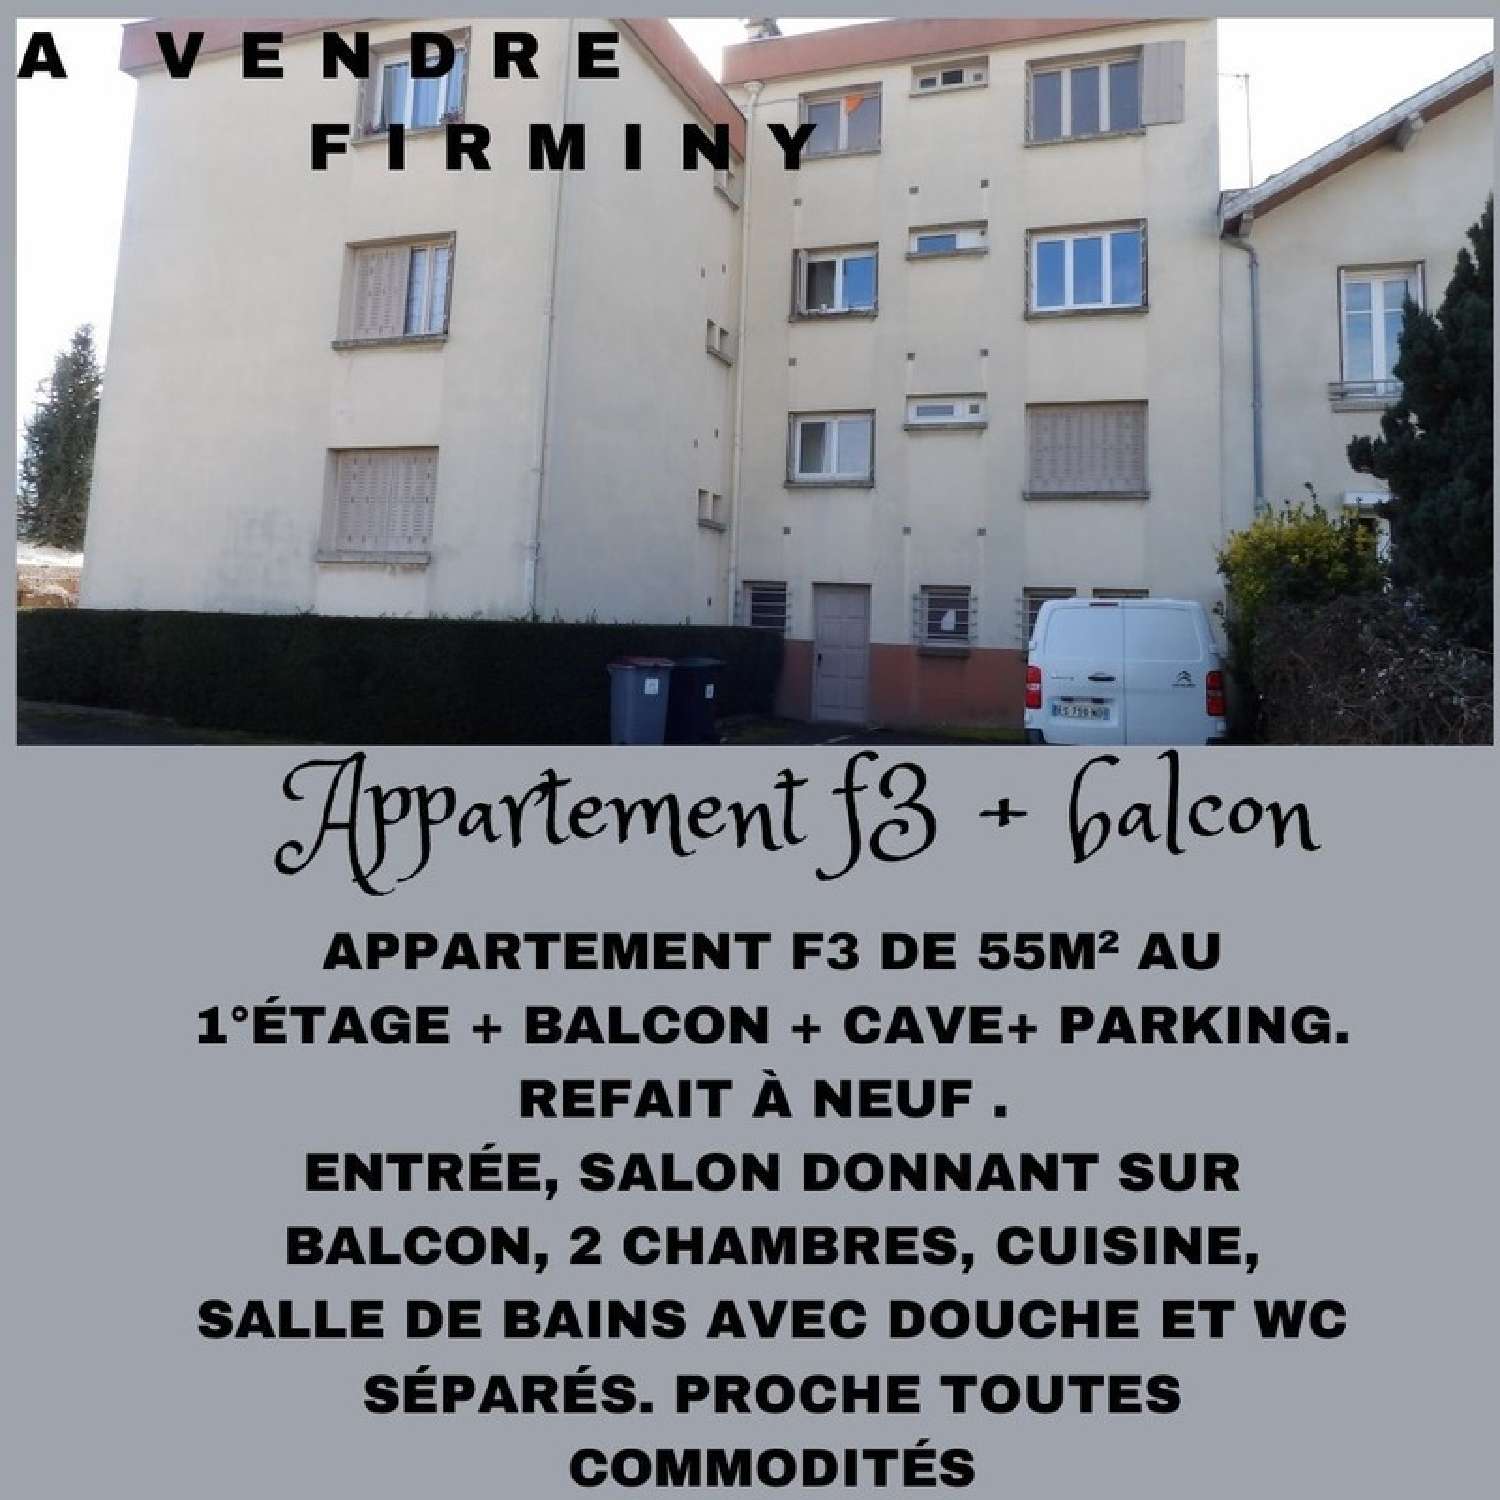 Firminy Loire appartement foto 6798233